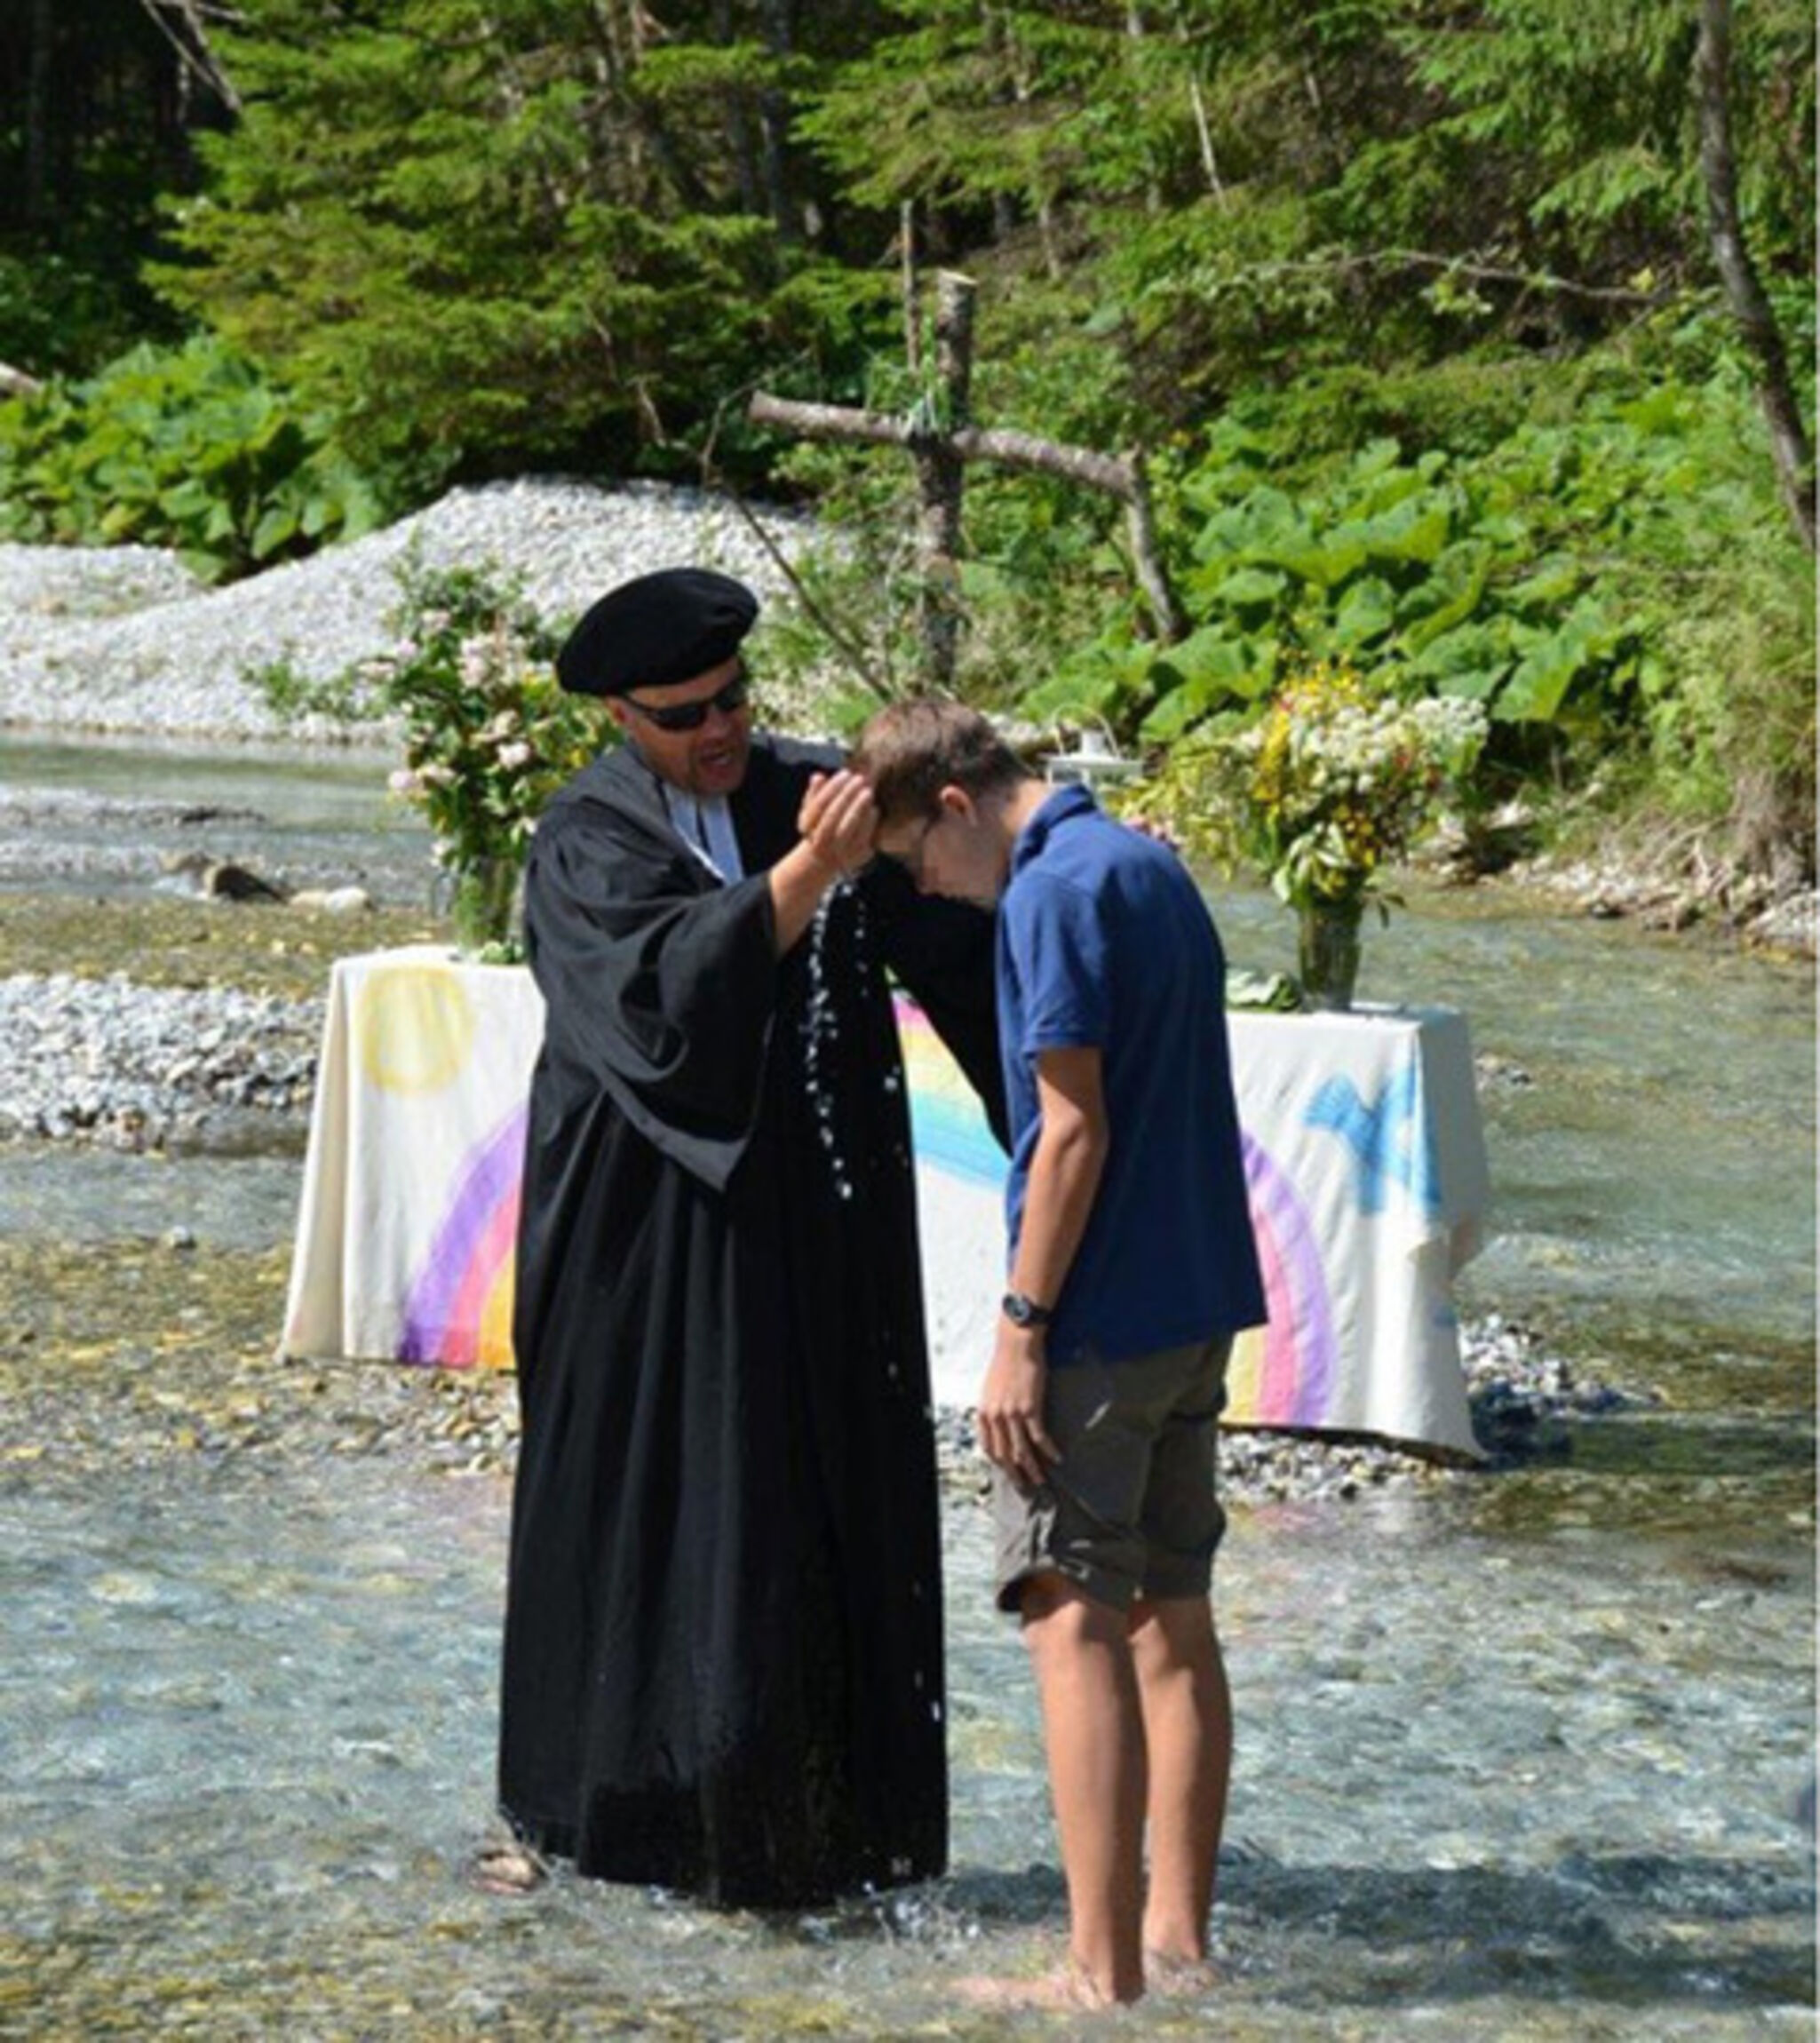 Taufe im Fluss (Pastor Rumberg mit jugendlichem Täufling)